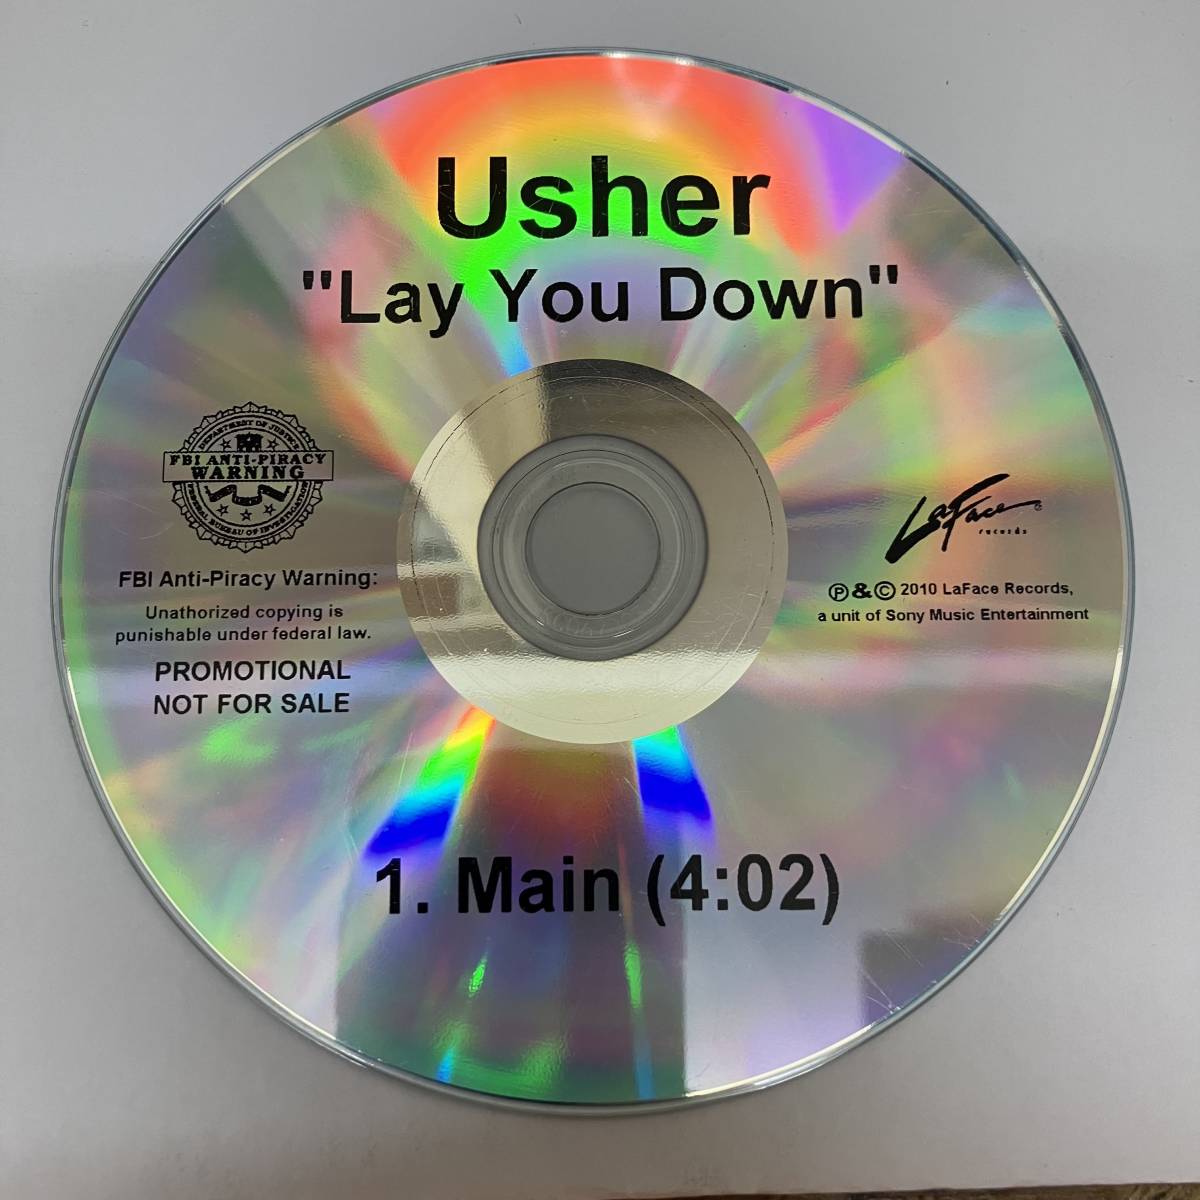 裸42 HIPHOP,R&B USHER - LAY YOU DOWN シングル,PROMO盤 CD 中古品_画像1